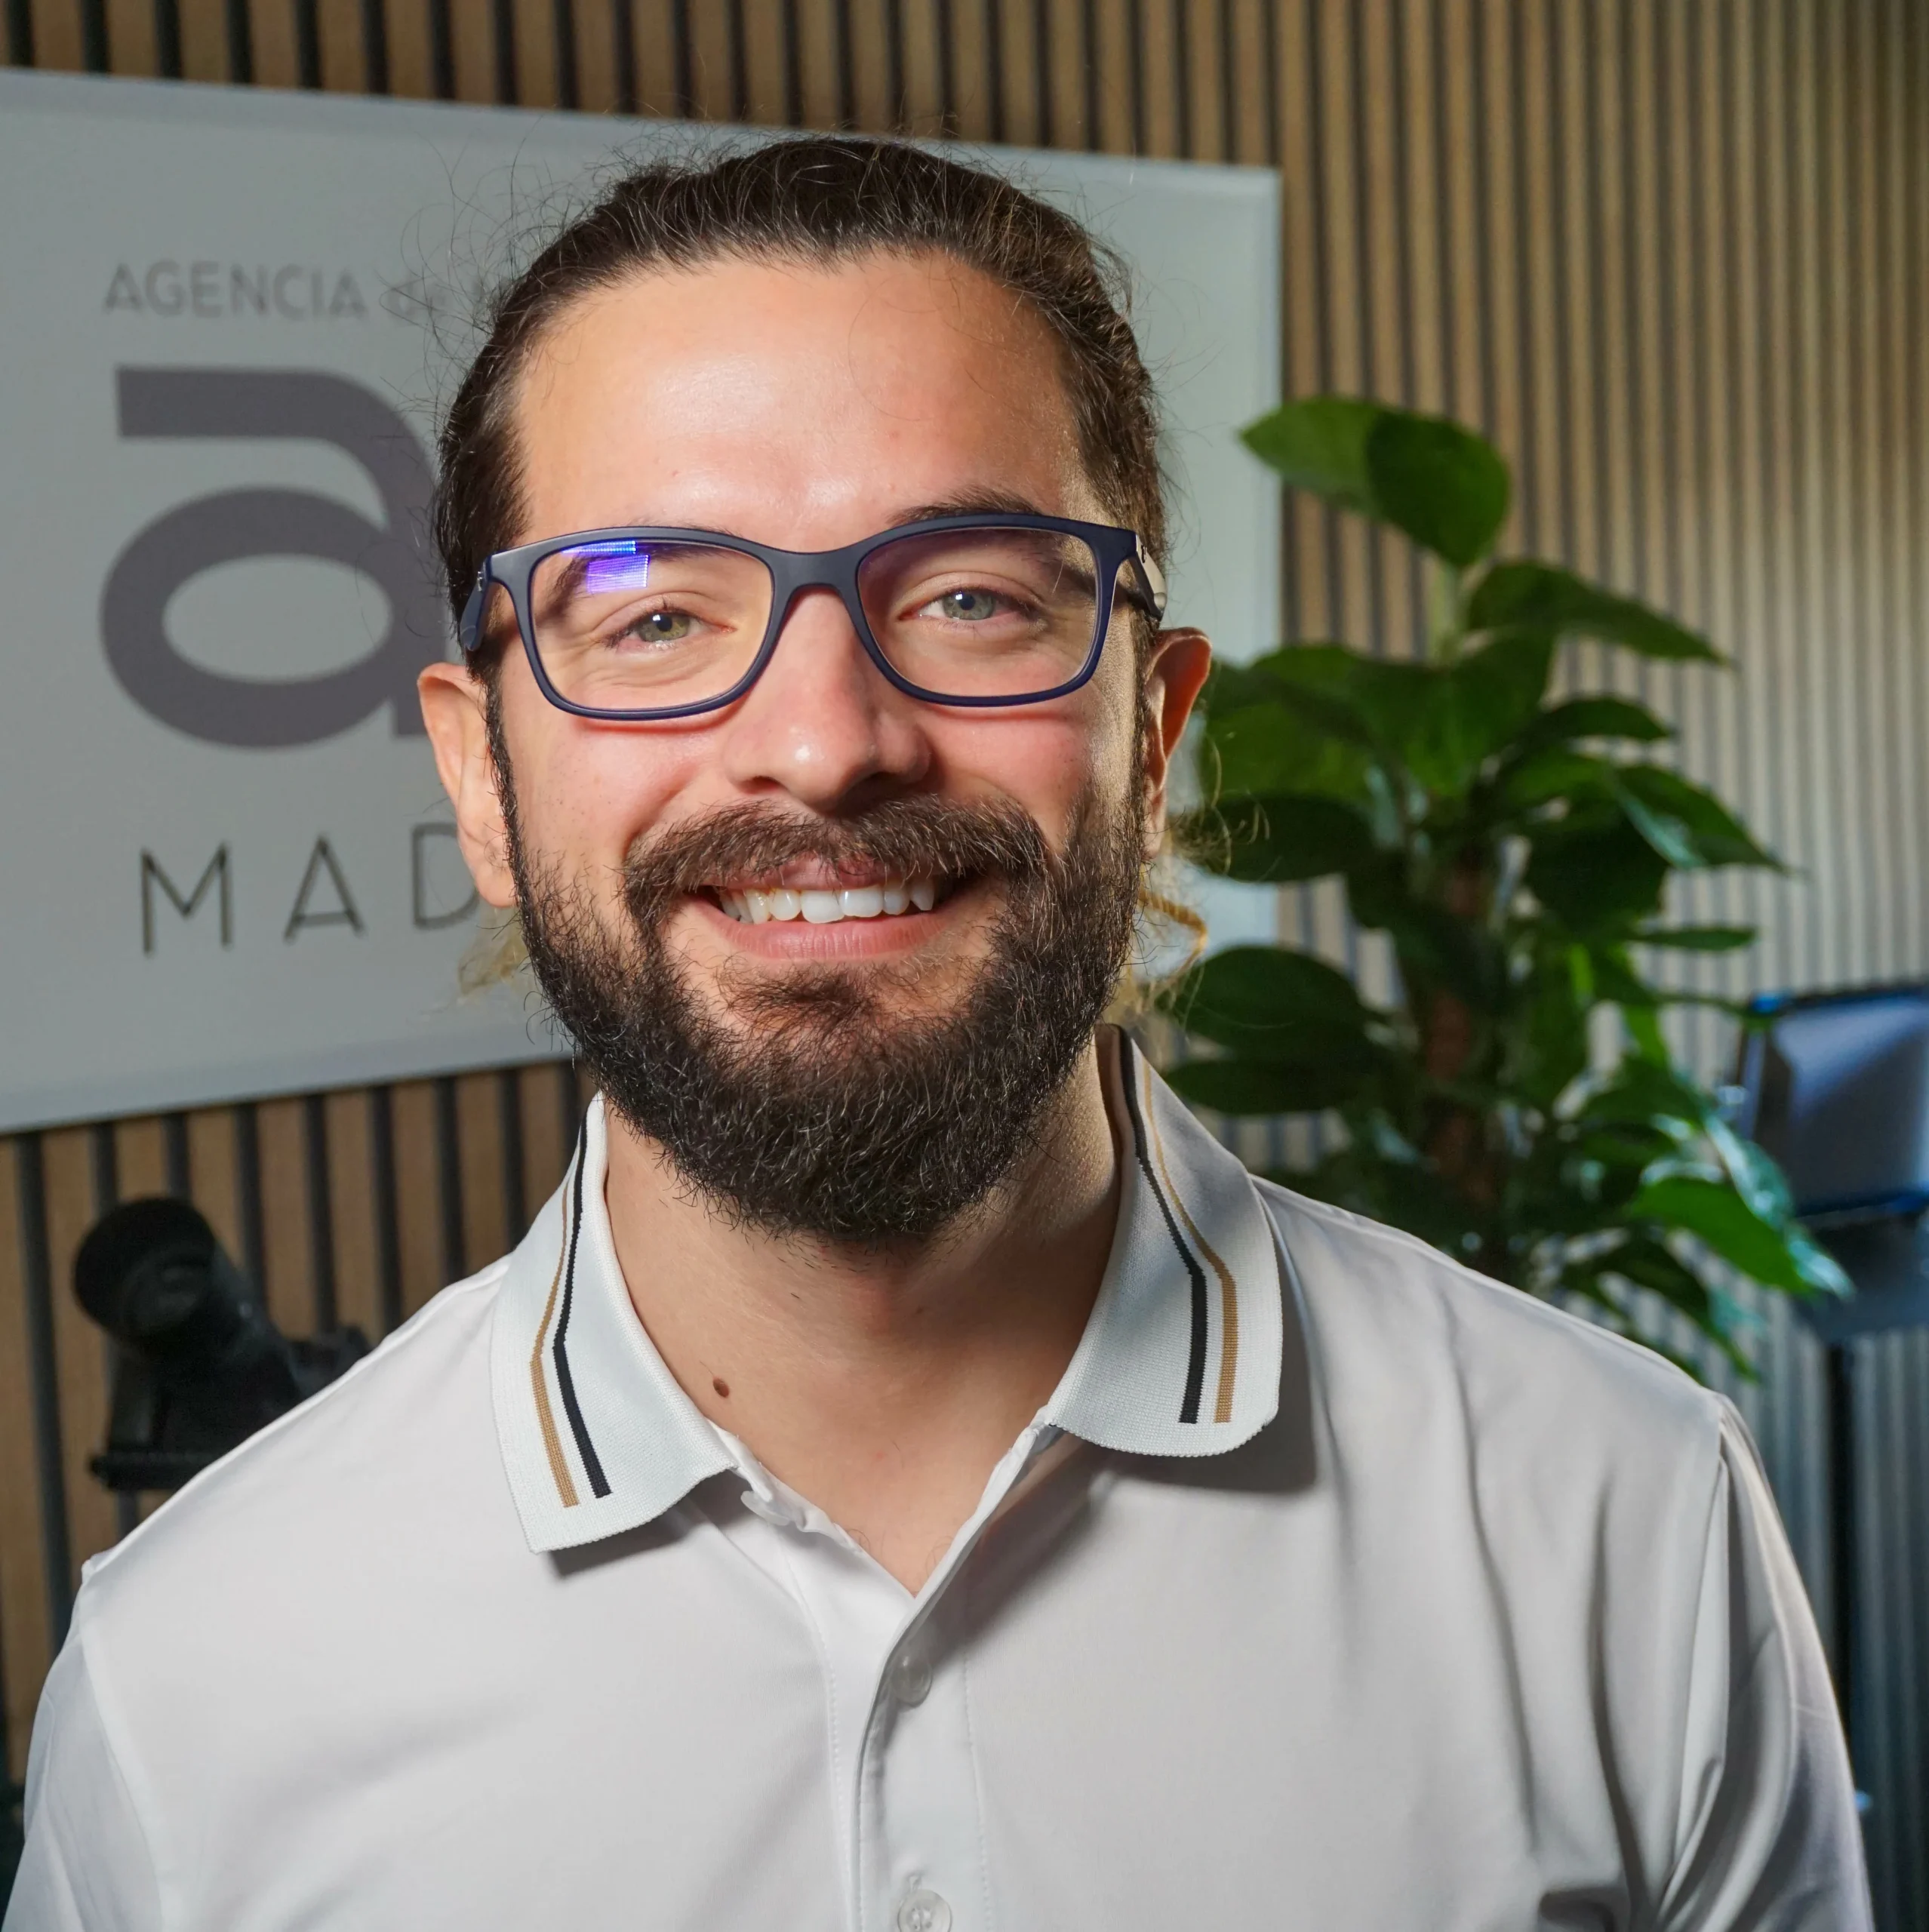 Frank CEO de AMG Madrid - agencia de marketing gastronómico